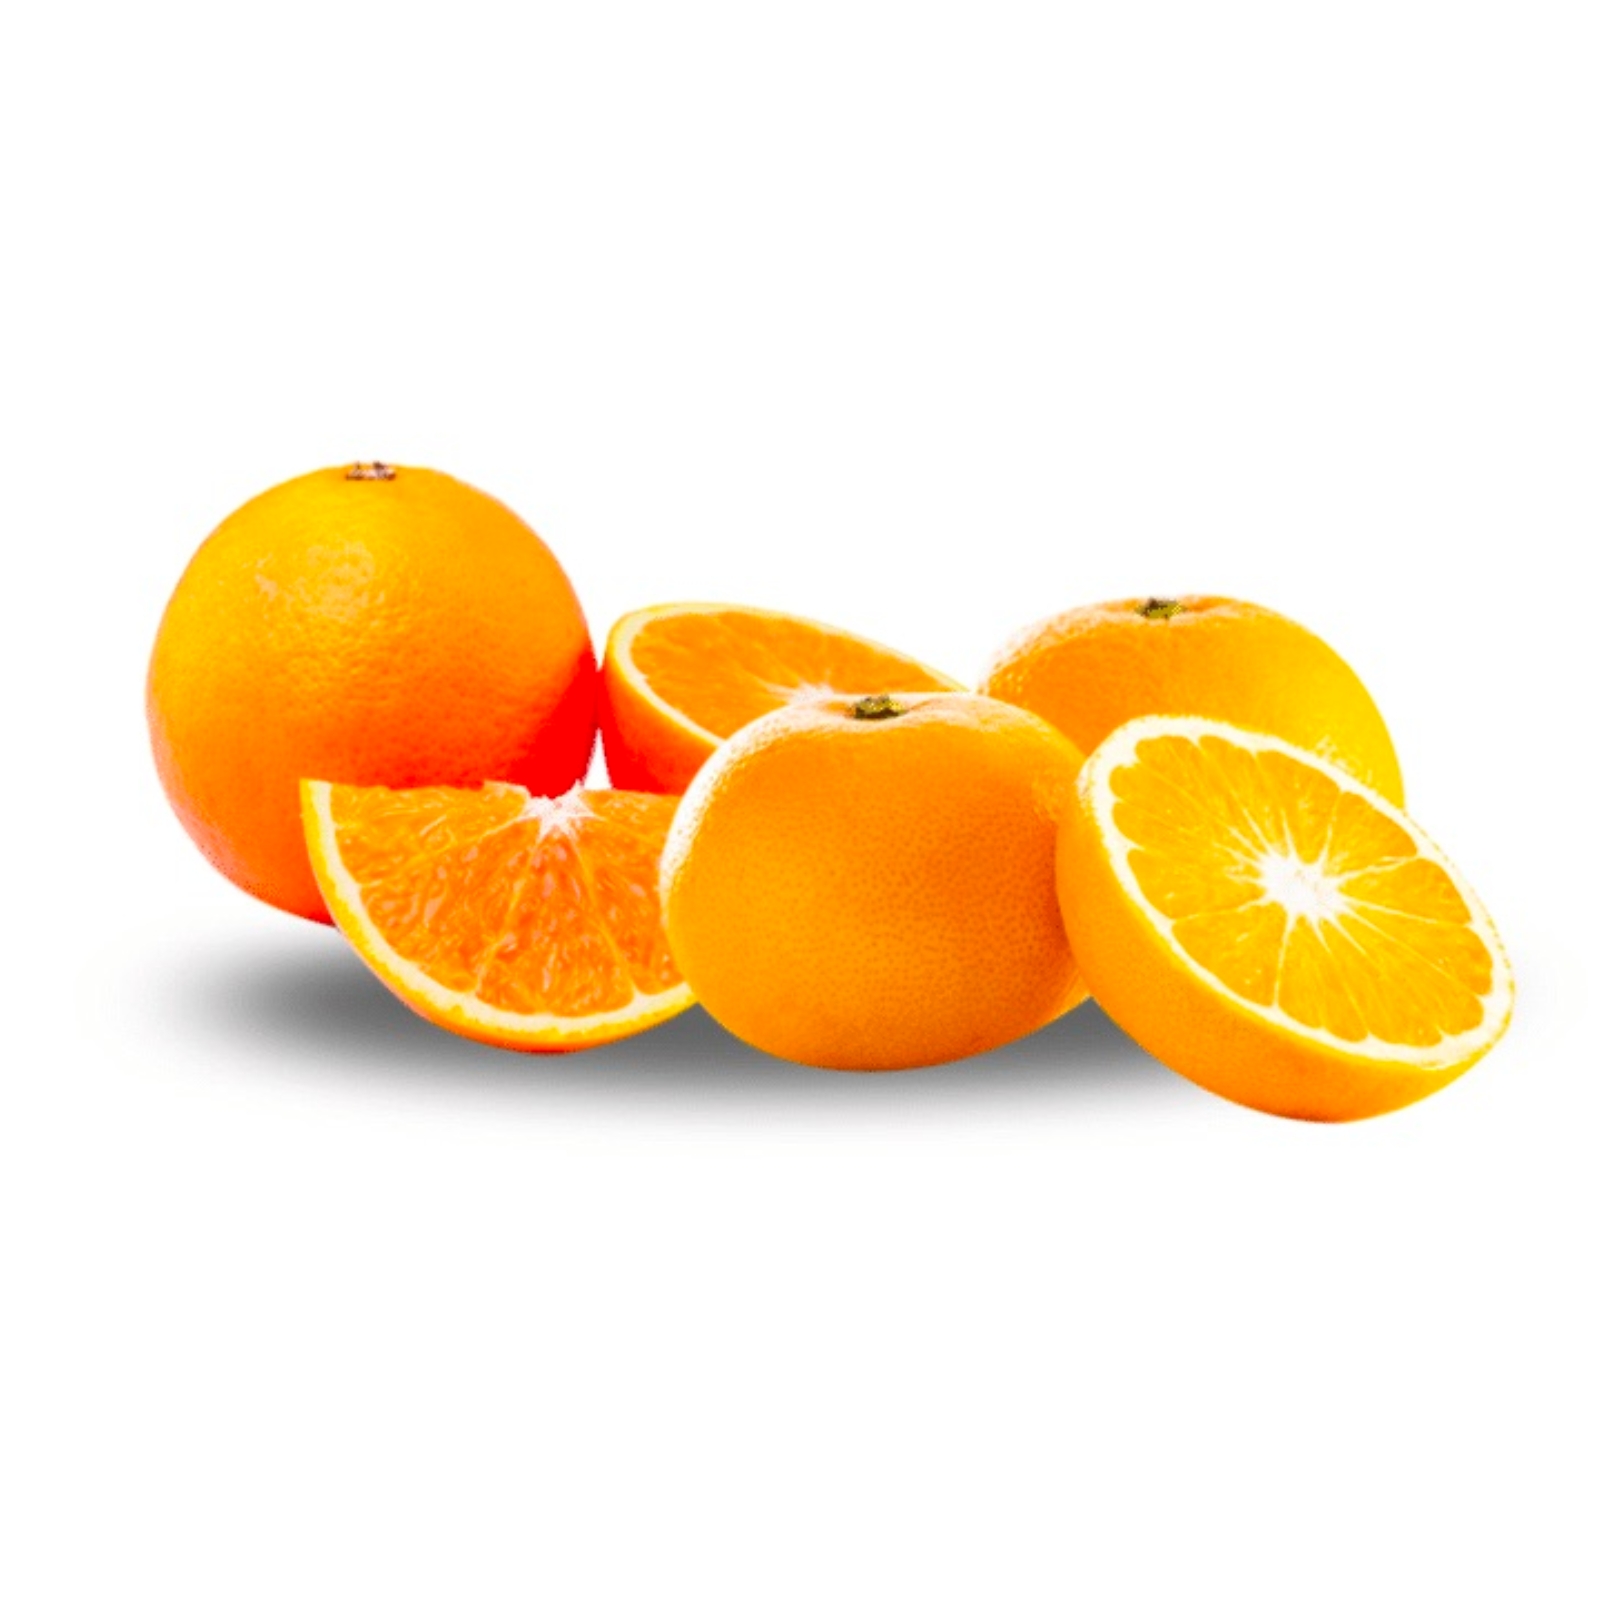 Buy Orange Grapefruit  Online NZ